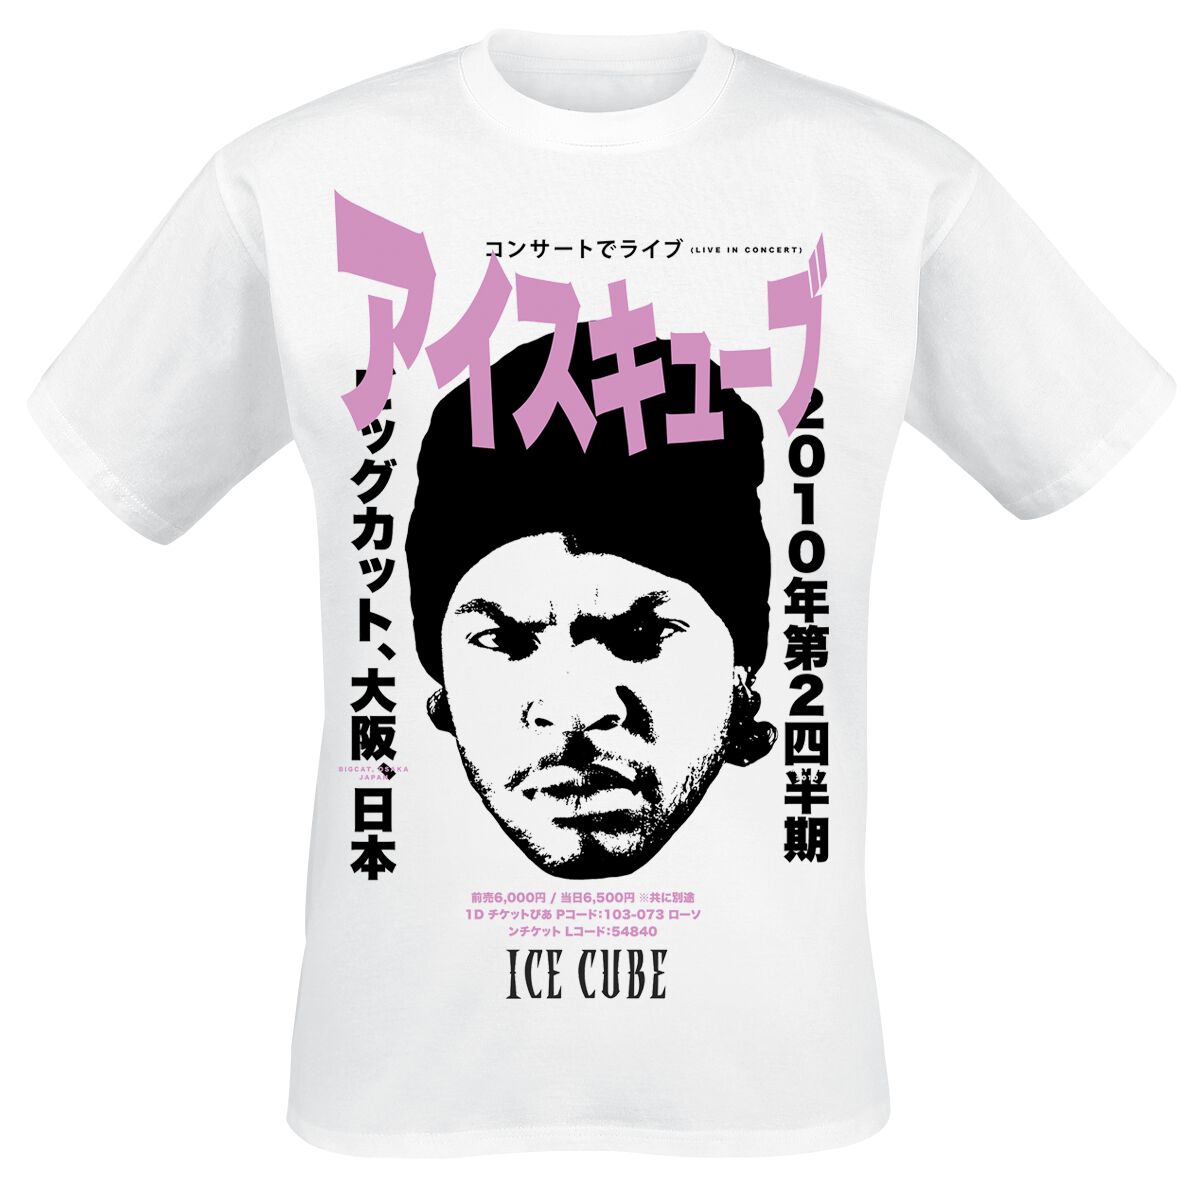 Ice Cube T-Shirt - Kanji - S bis L - für Männer - Größe M - weiß  - Lizenziertes Merchandise!